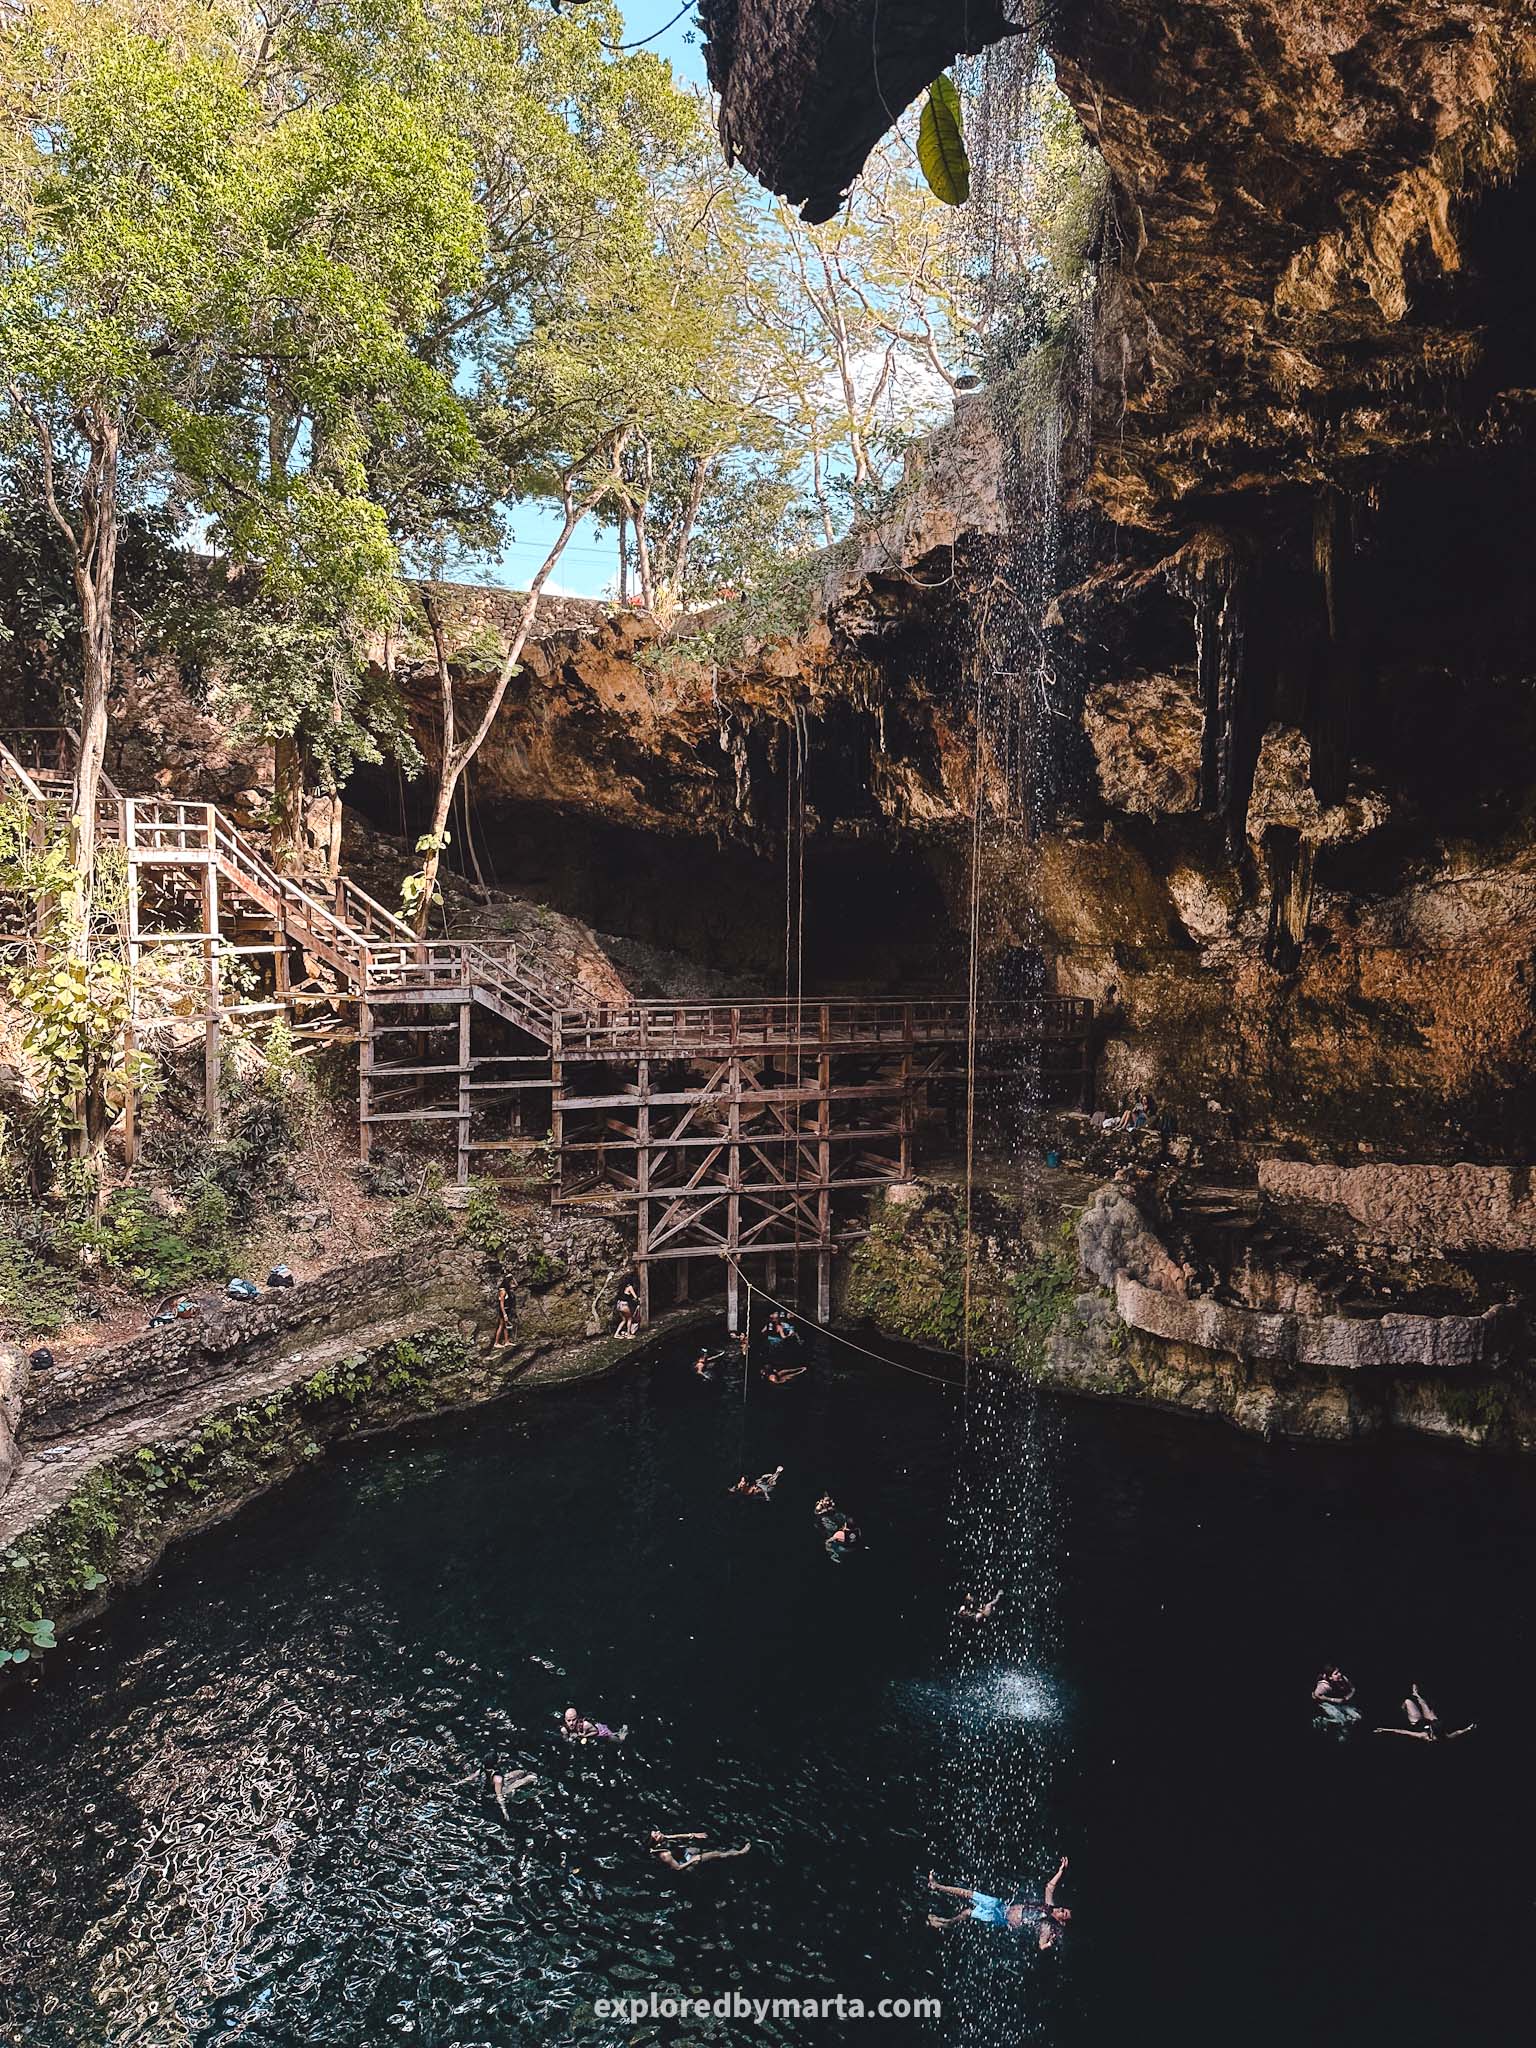 Valladolid, Mexico - best cenotes near Valladolid - Cenote Zaci